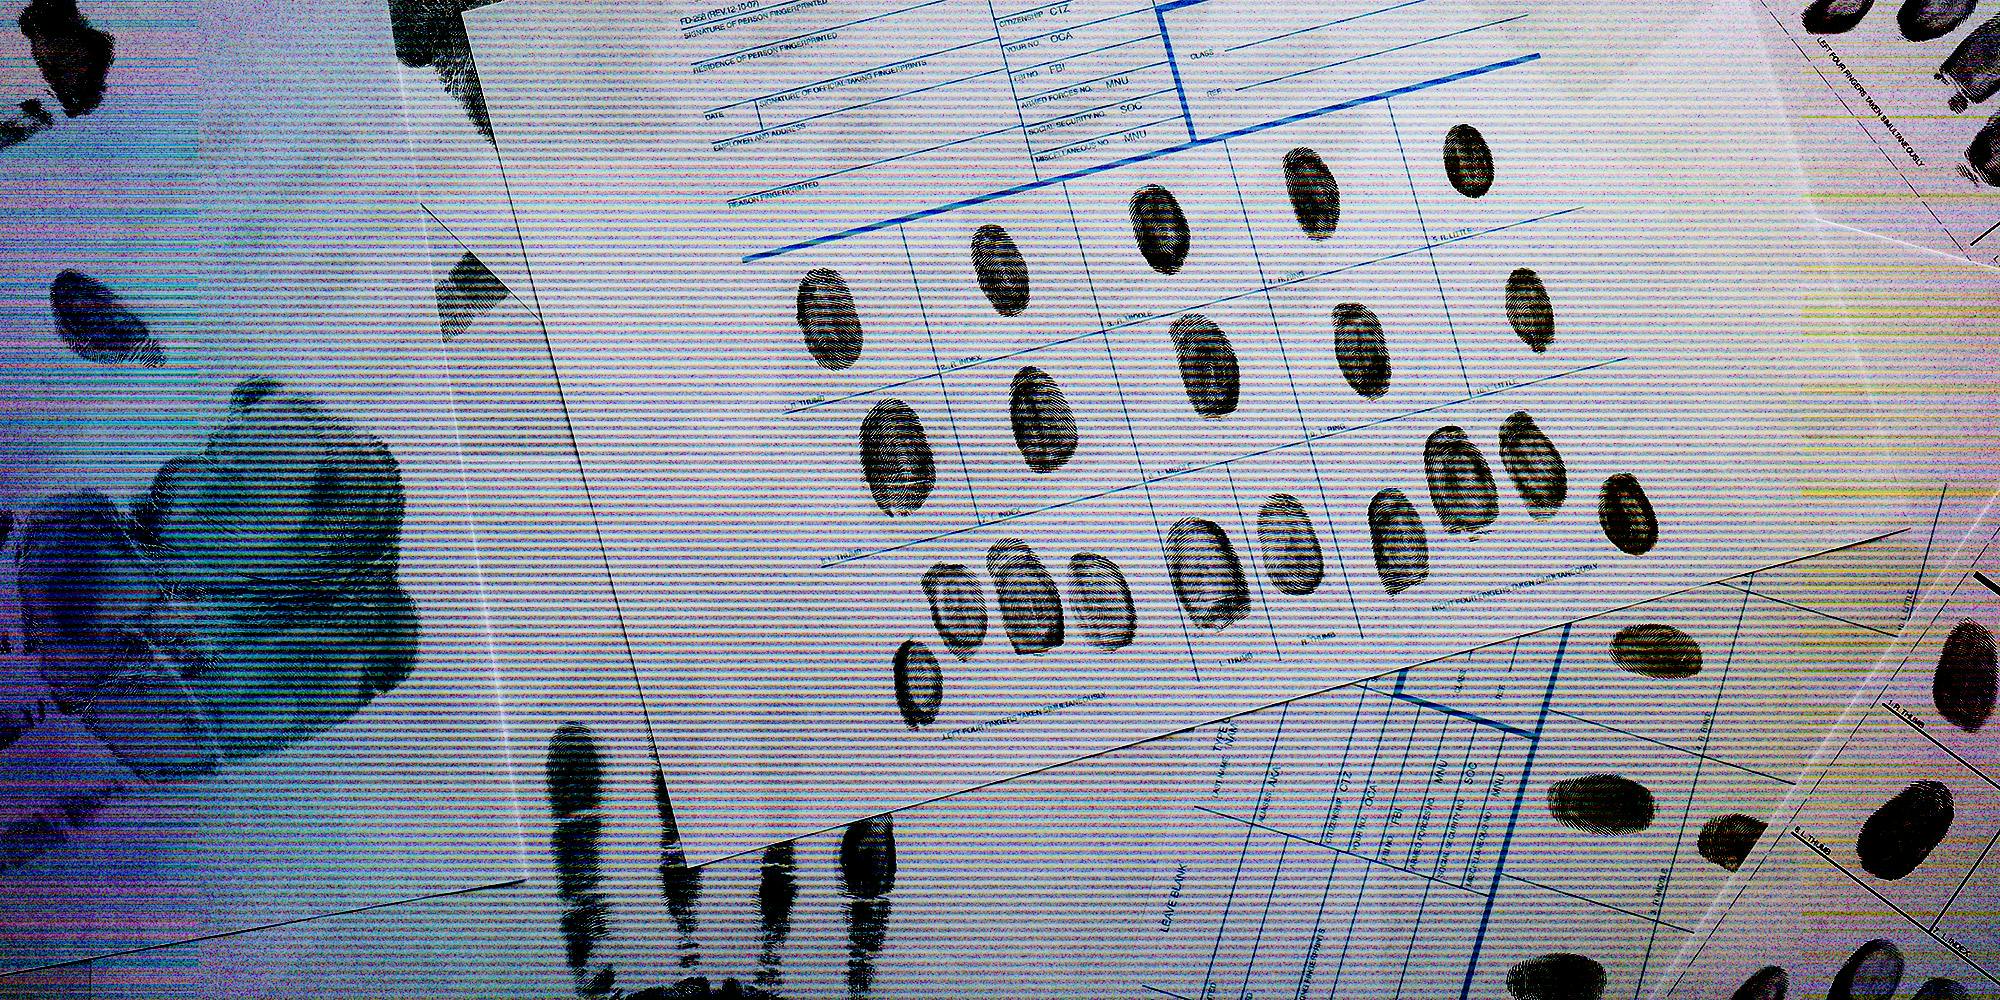 A fingerprint record sheet.